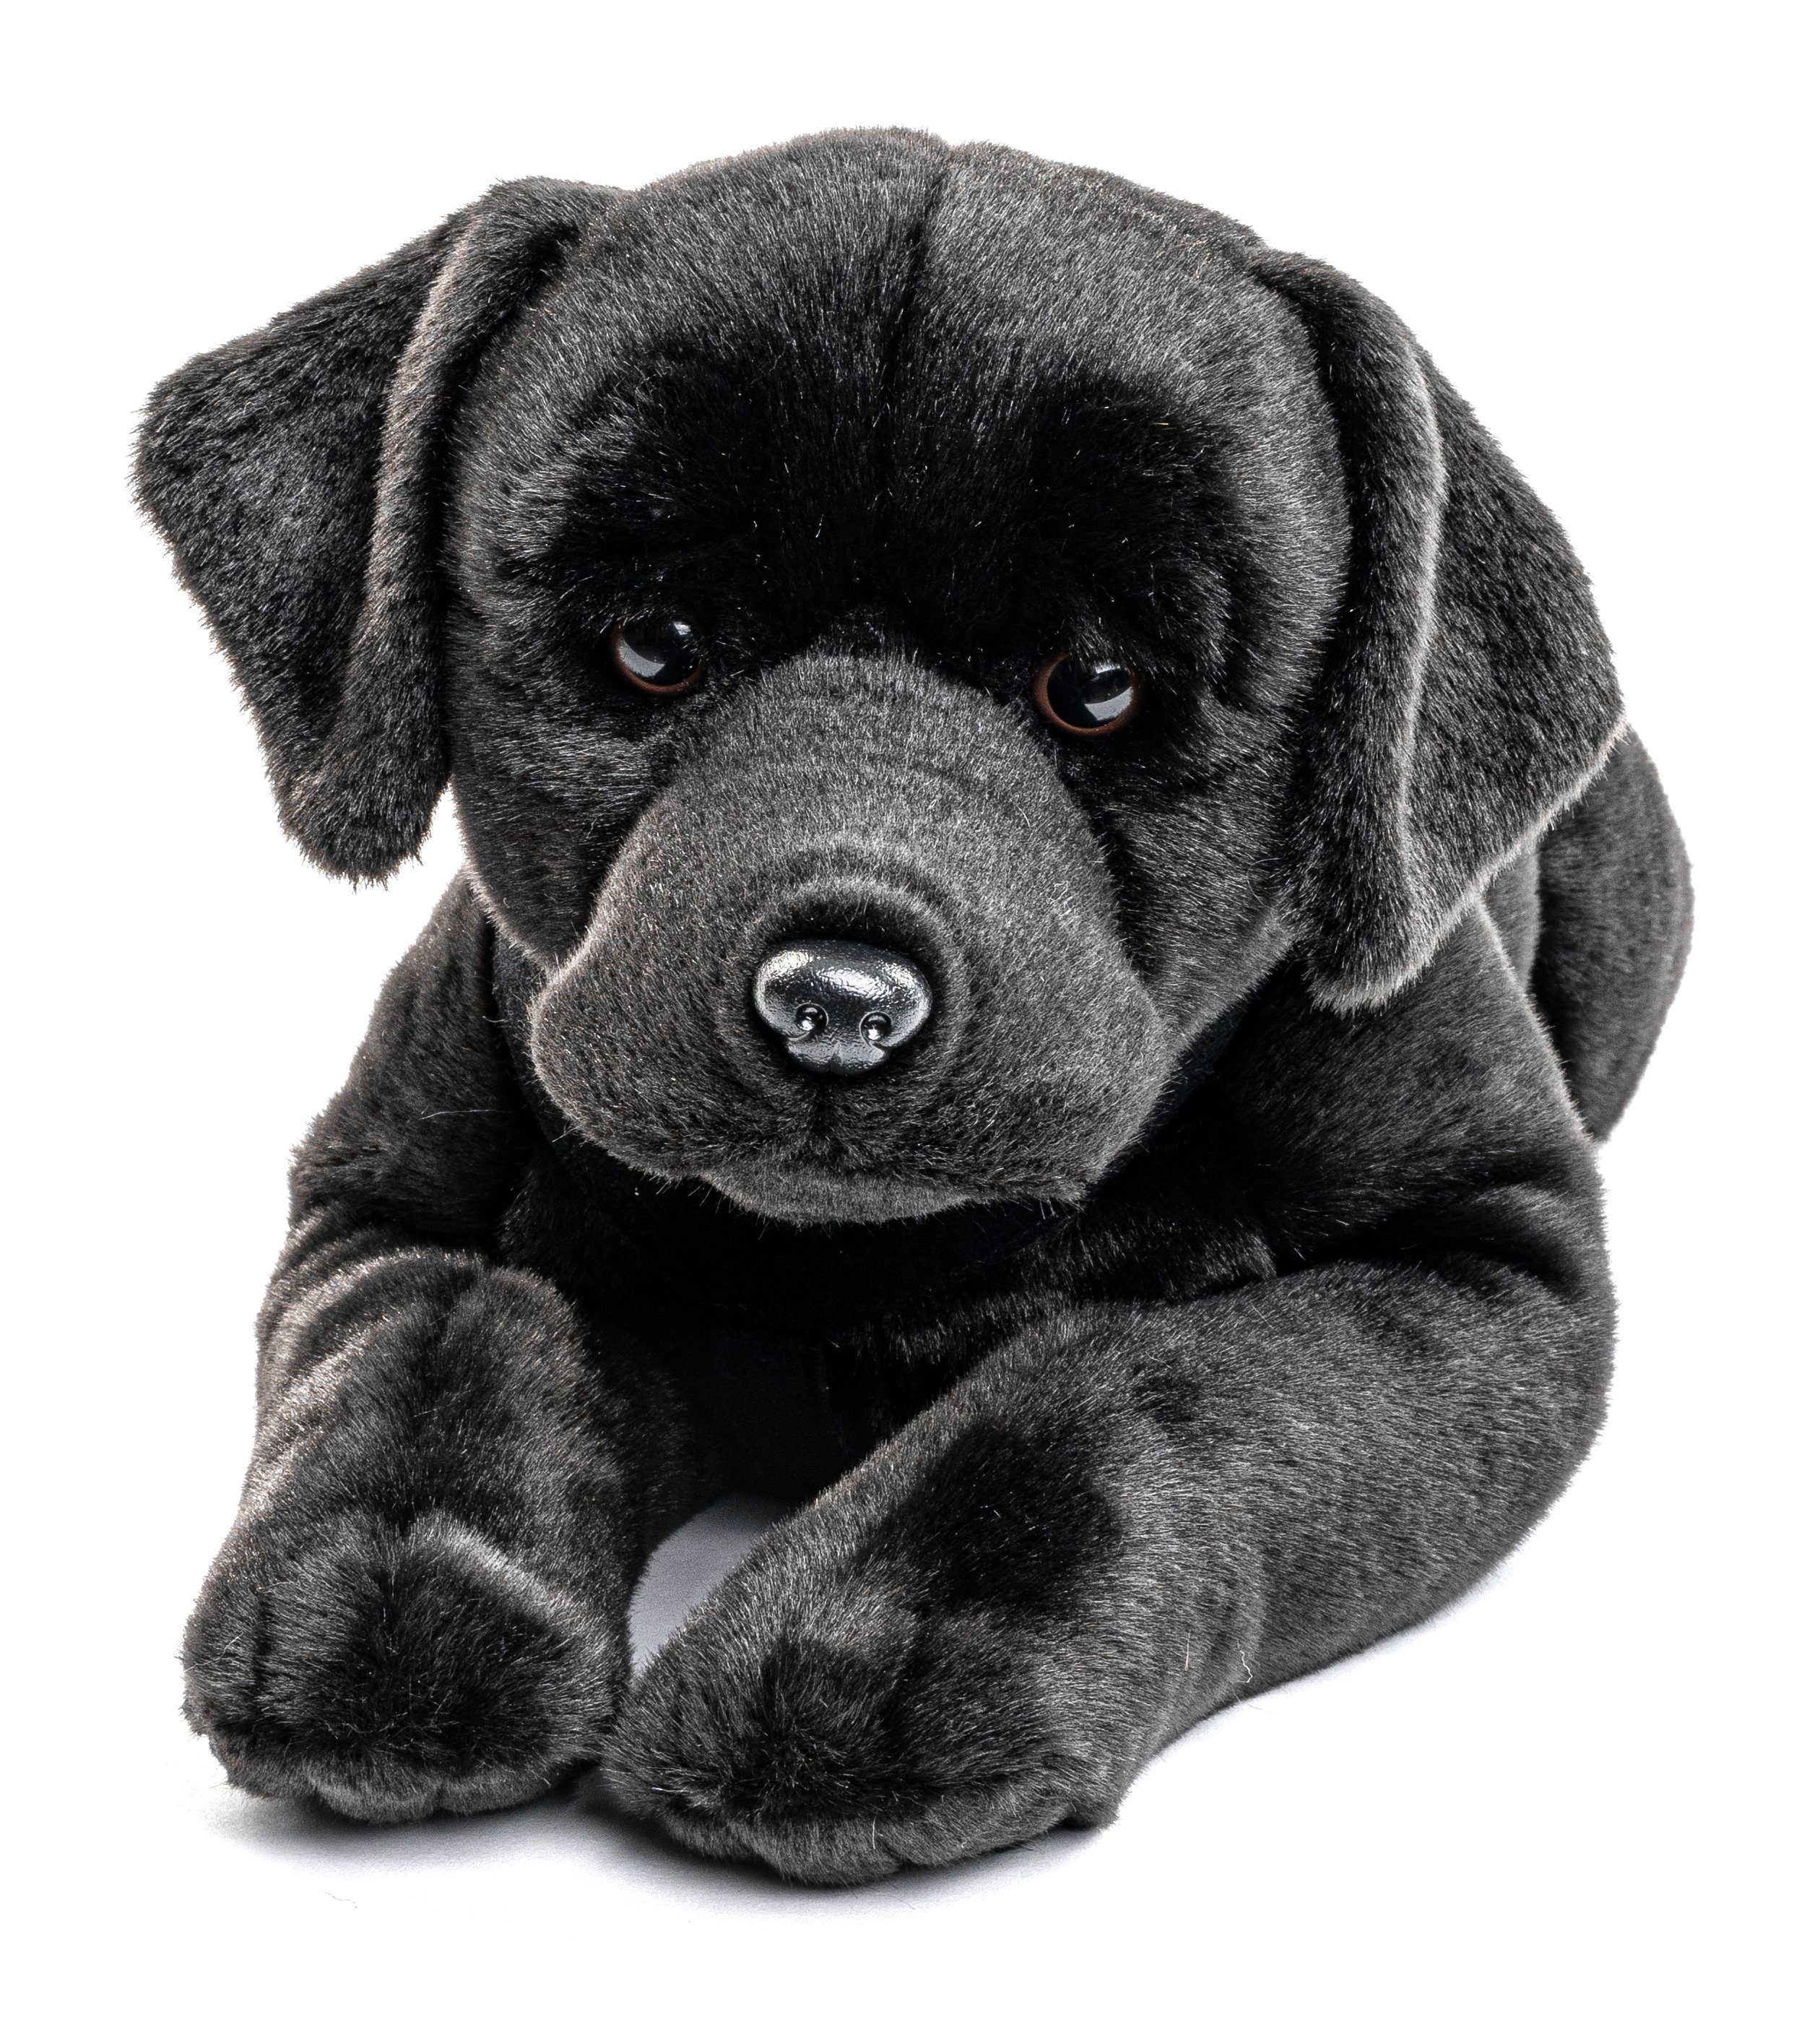 Uni-Toys Kuscheltier Labrador, liegend - braun o. schwarz - 60 cm - Plüsch- Hund, Plüschtier, zu 100 % recyceltes Füllmaterial